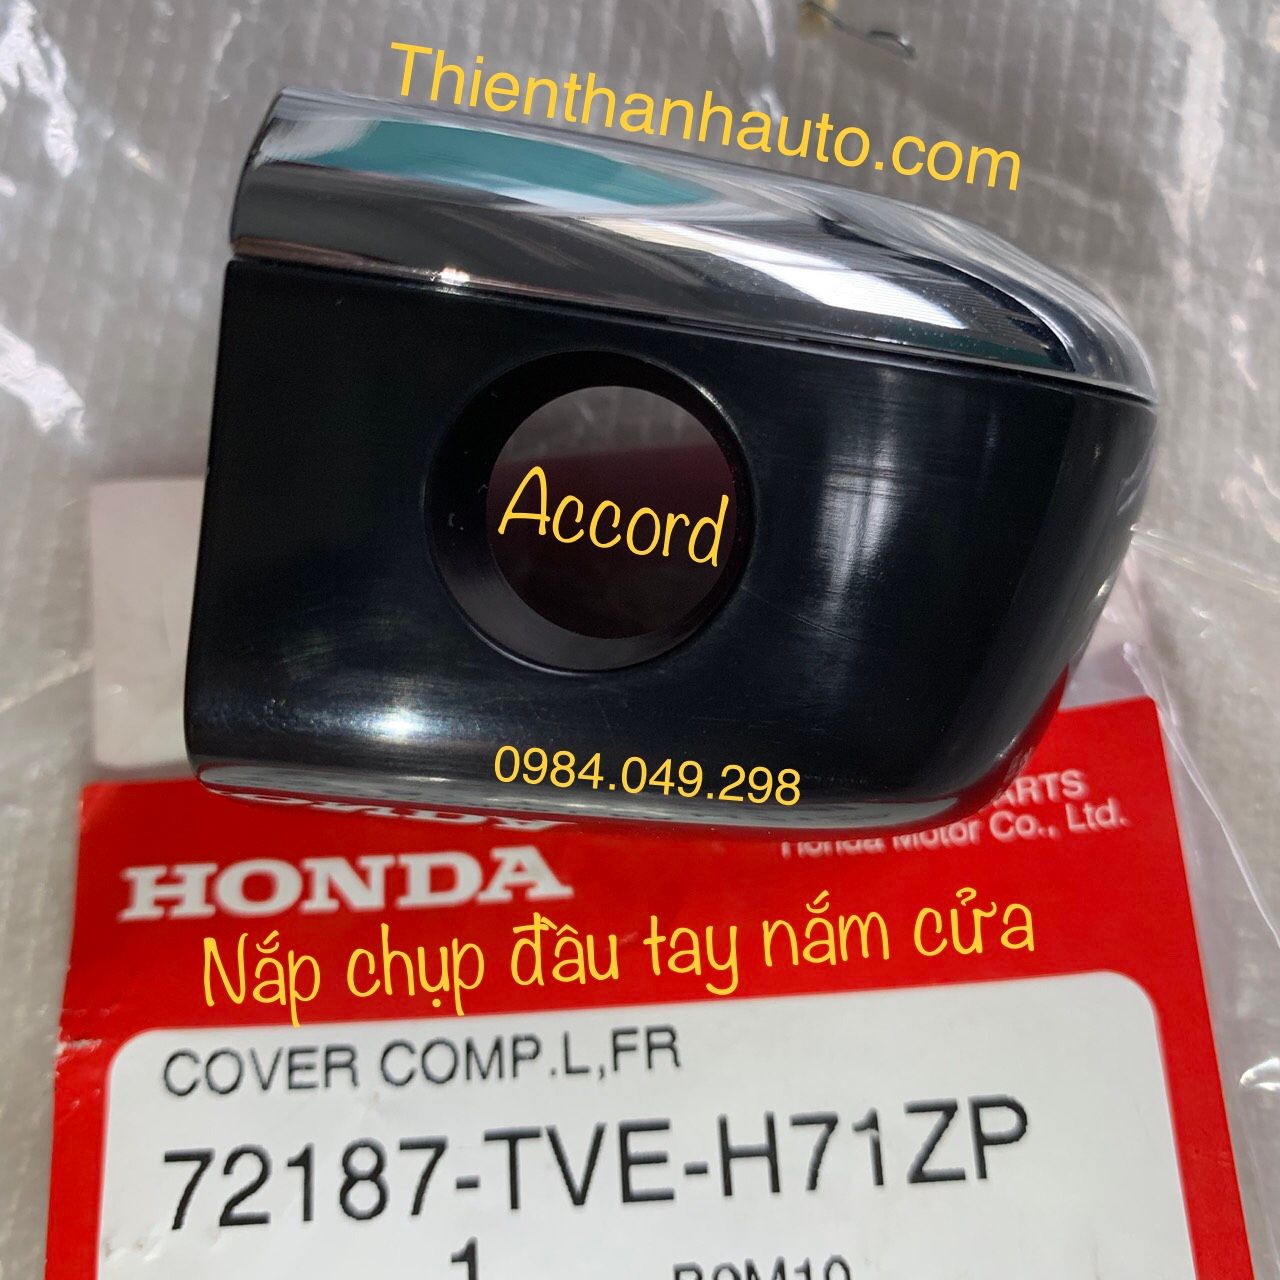 Nắp chụp đầu tay nắm mở cửa ngoài Honda Accord chính hãng - Phụ tùng ô tô Thiên Thanh